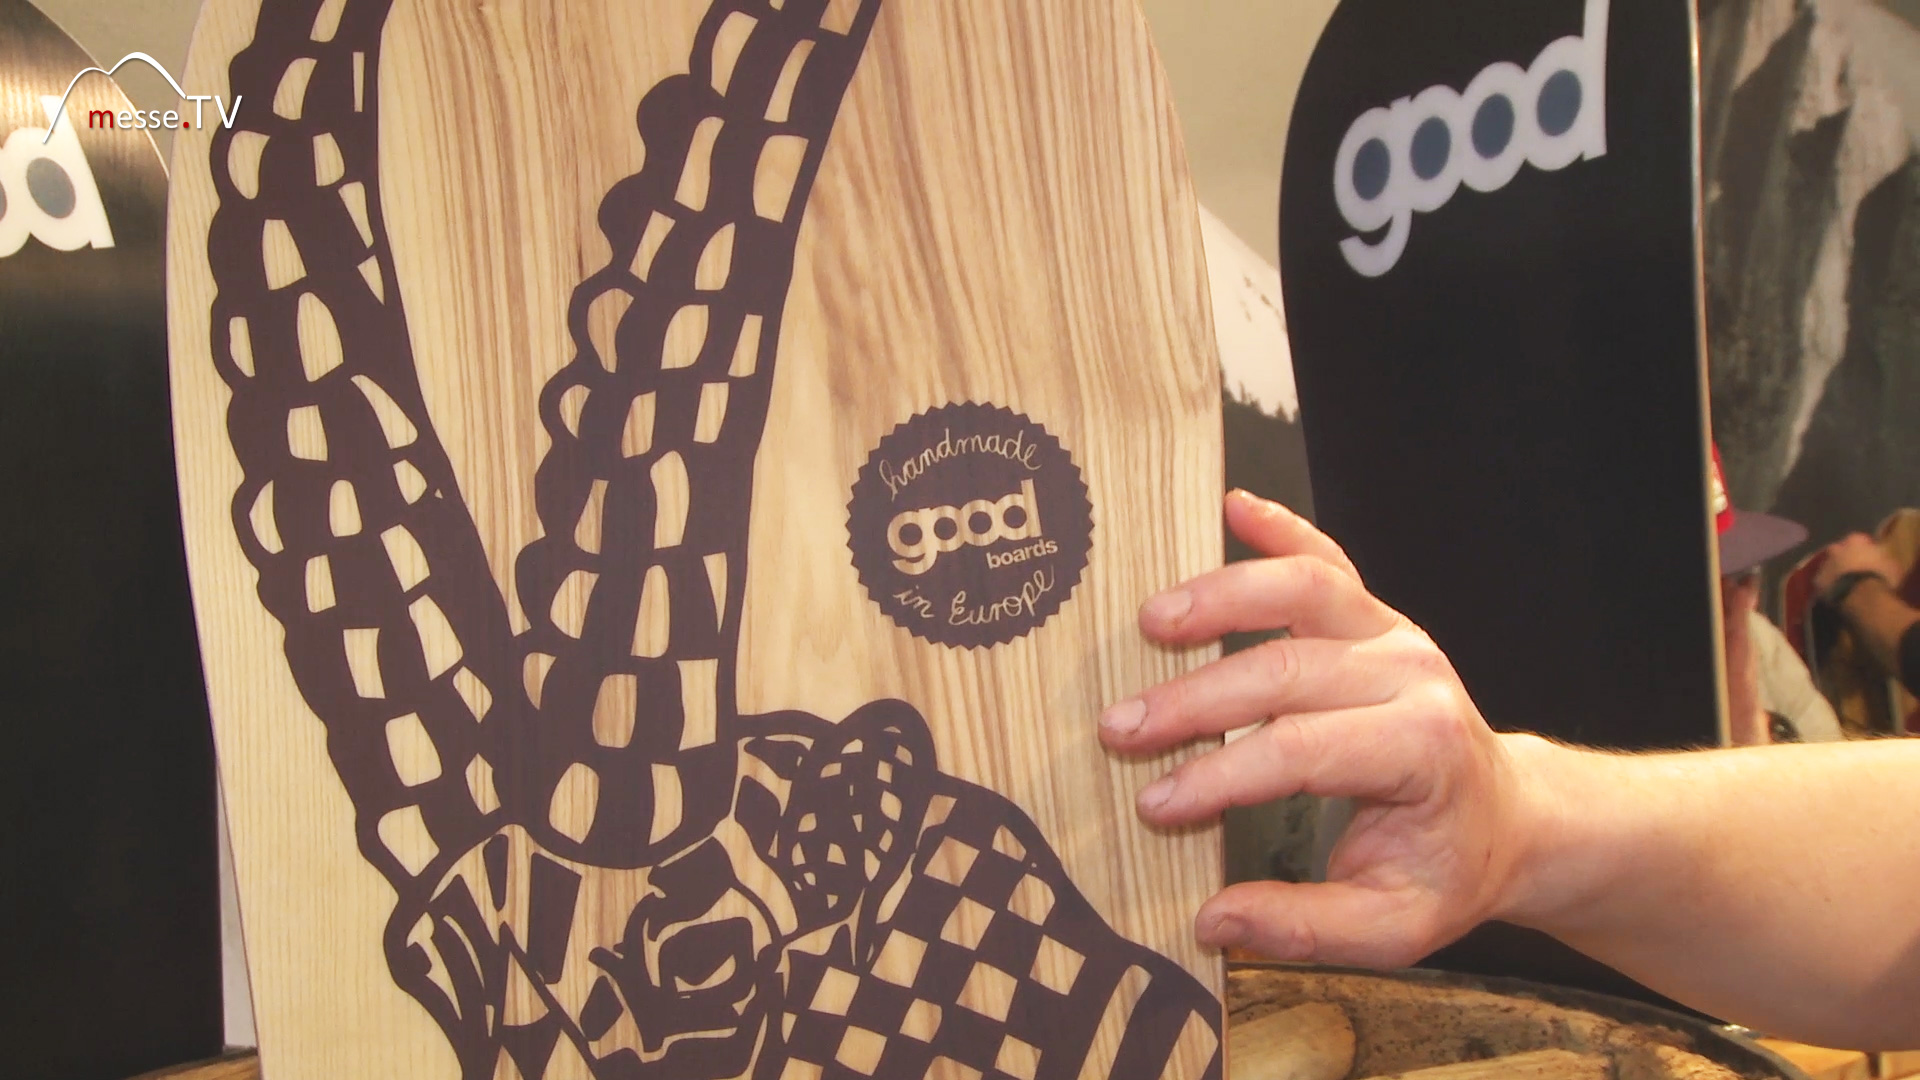 Holz Snowboard mit Steinbock Motiv Good Boards